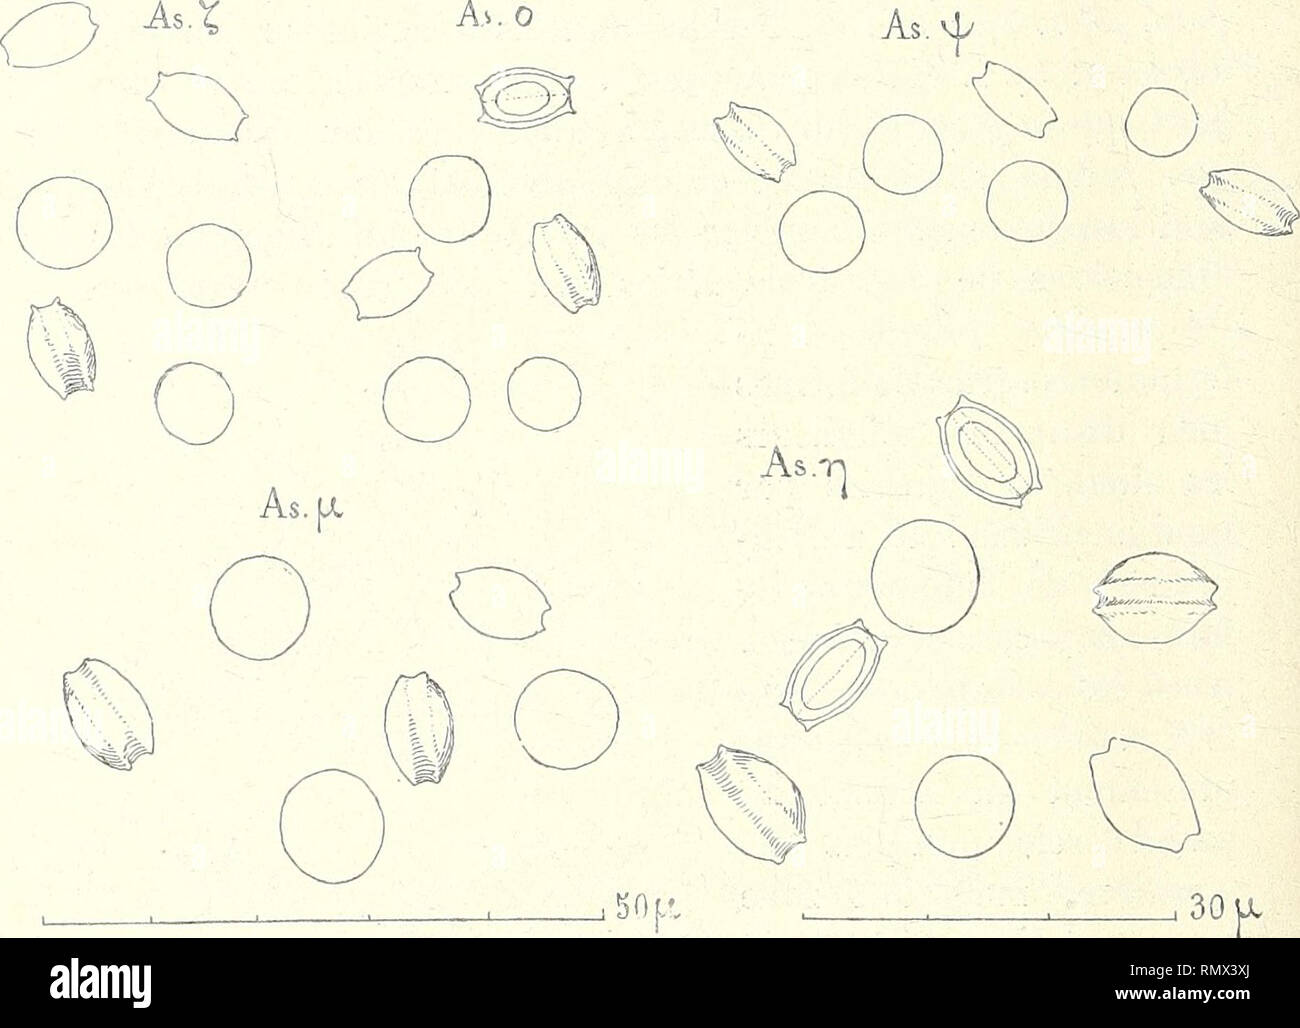 . Annales des Sciences Naturelles Botaniques. 346 L. MANGIN dimensions 7,G x 5,G qui présentent sur leur grand diamètre une gouttière bien nette, bordée de deux crêtes circulaires plus ou moins saillantes (fig. 8, As. r, et As. o) et fig. 9, As. ); les. Fig. 8. — Ascospores de diverses formes. As. Ç et As. o de dimensions 7 p. 6 x 5 |»7, vues de face et de profil. As. jx, dimensions 9,4 x 6,6. L'une des formes As. o montre la coupe optique d'une ascospore avec la ligne pointillée de moindre résistance. Fig. 9. — As. fy, ascospores de dimen- sions 7 |a6x5[ji7. As. r), ascospores ayant 9 jx 4 x  Stock Photo